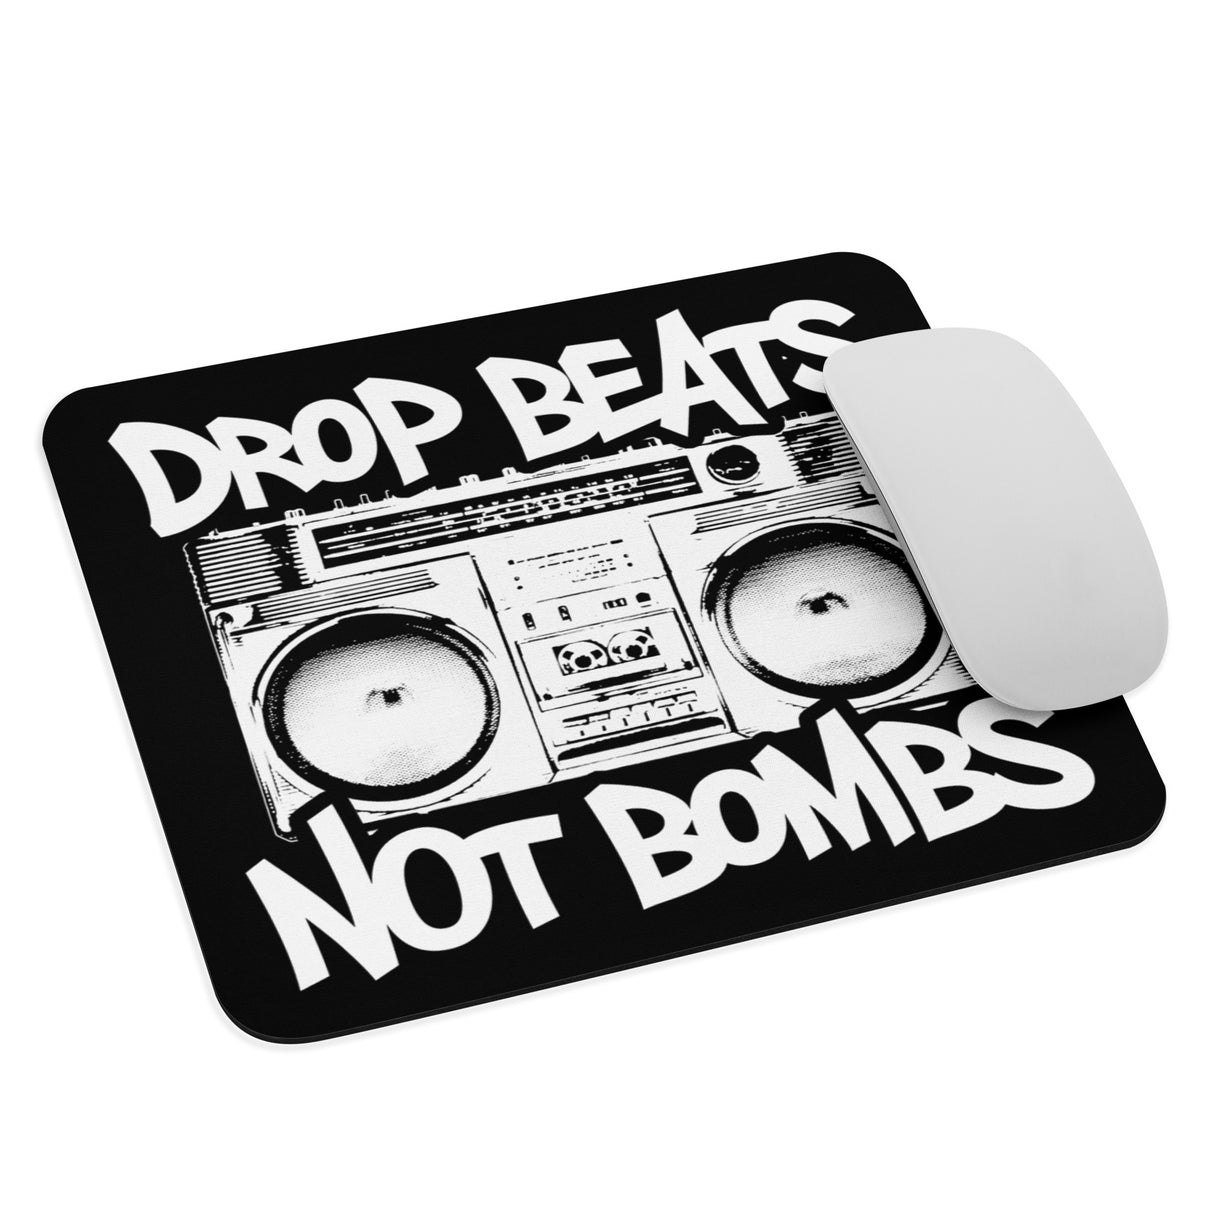 Drop Beats Not Bombs Mouse Pad - Libertarian Country